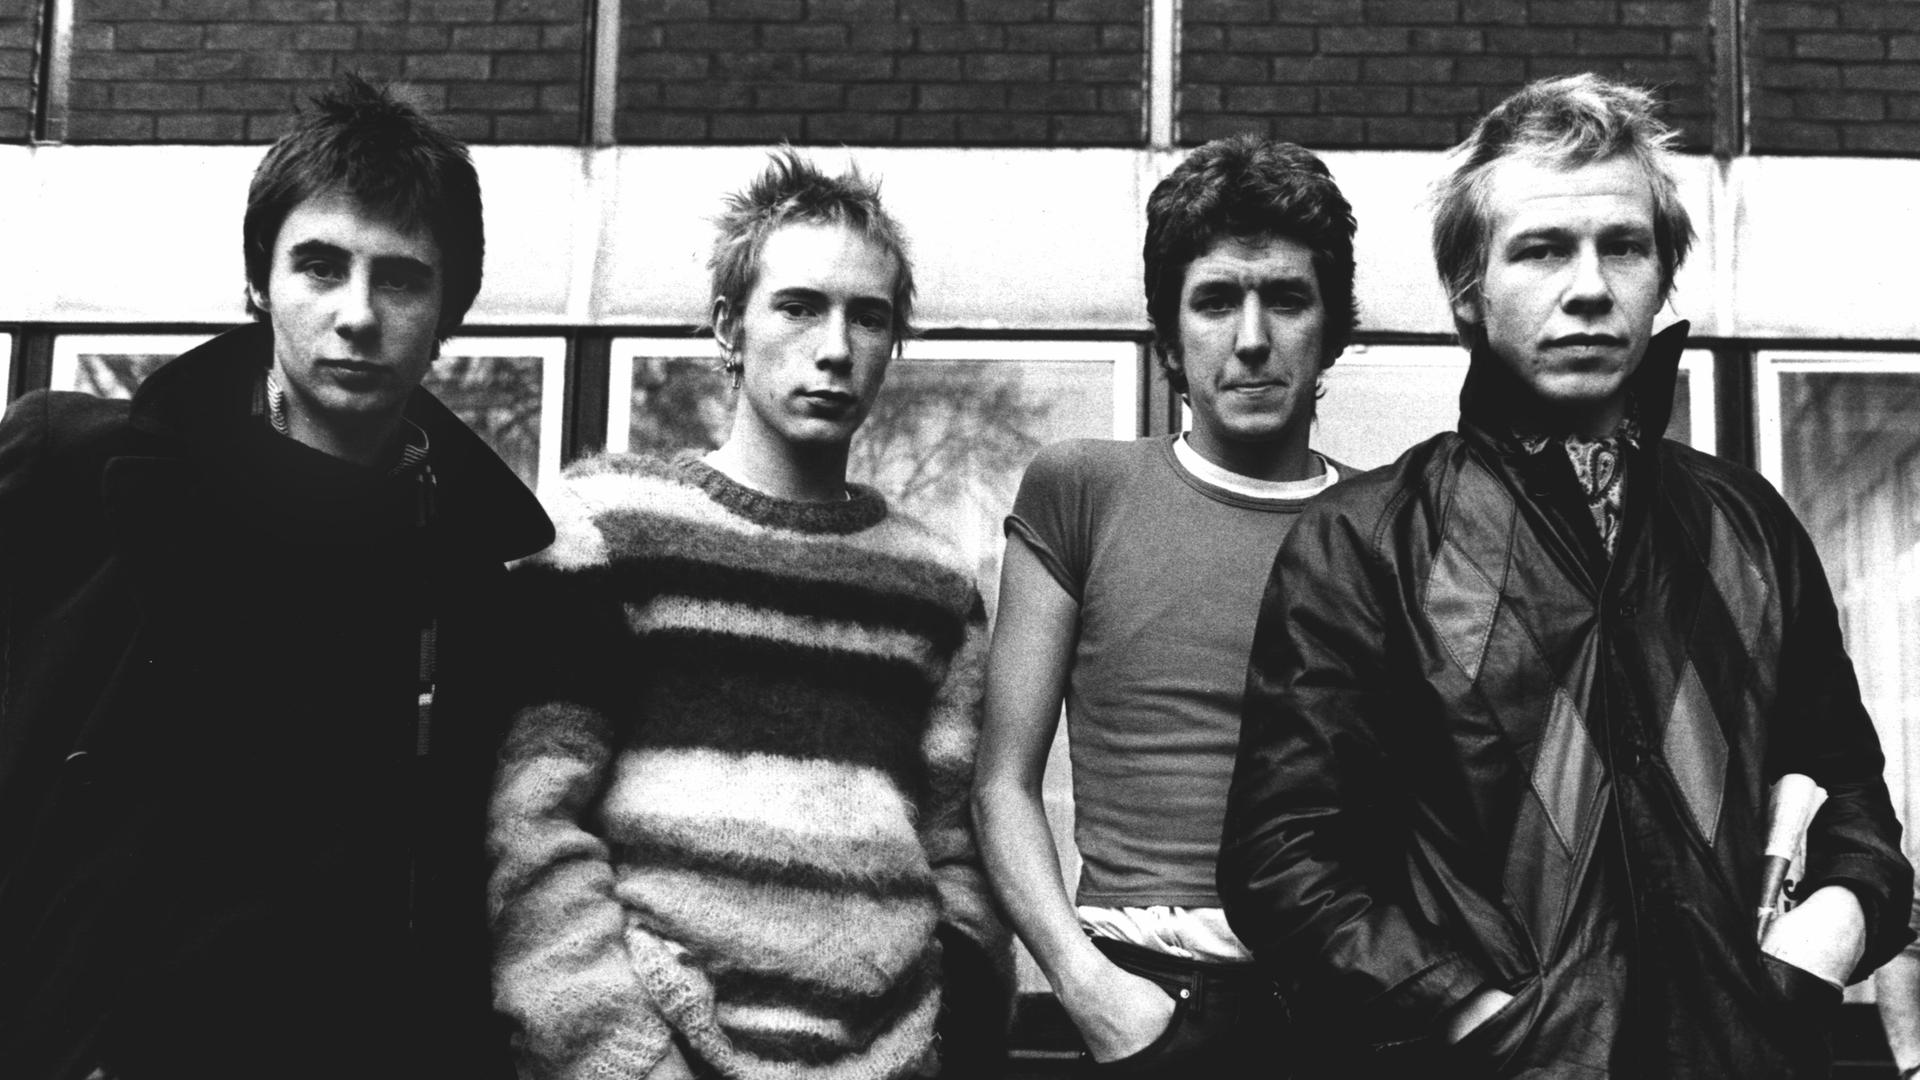 Schwarz-Weiß-Aufnahme der Band Sex Pistols, die nebeneinander vor einem Haus stehen, Hände in den Hosentaschen.